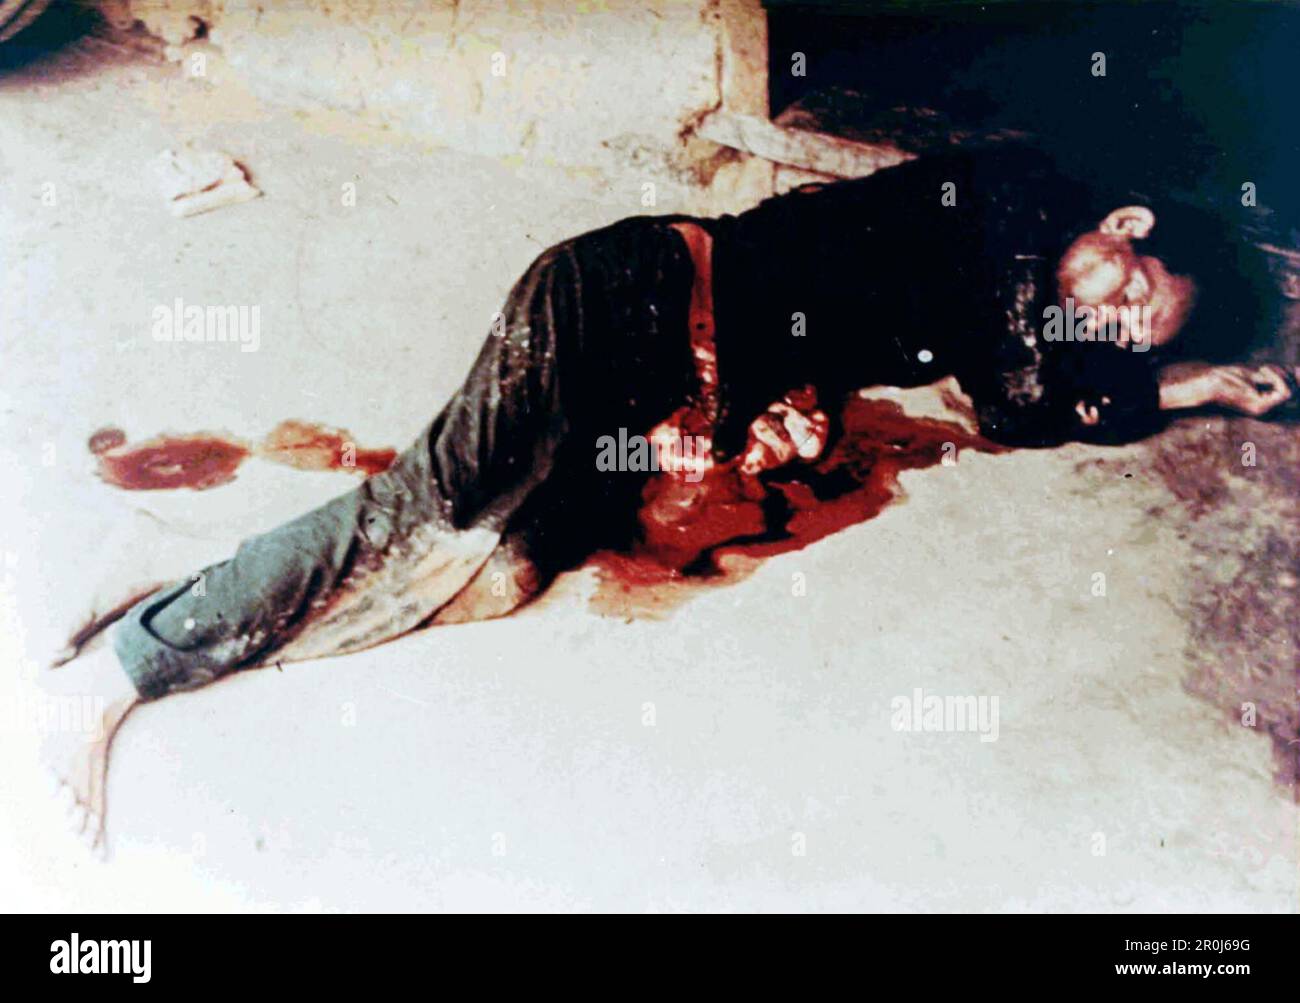 Uomo vietnamita morto non identificato nel villaggio vietnamita di My Lai dopo che circa 500 civili furono massacrati dalle truppe americane durante la guerra del Vietnam. Foto Stock